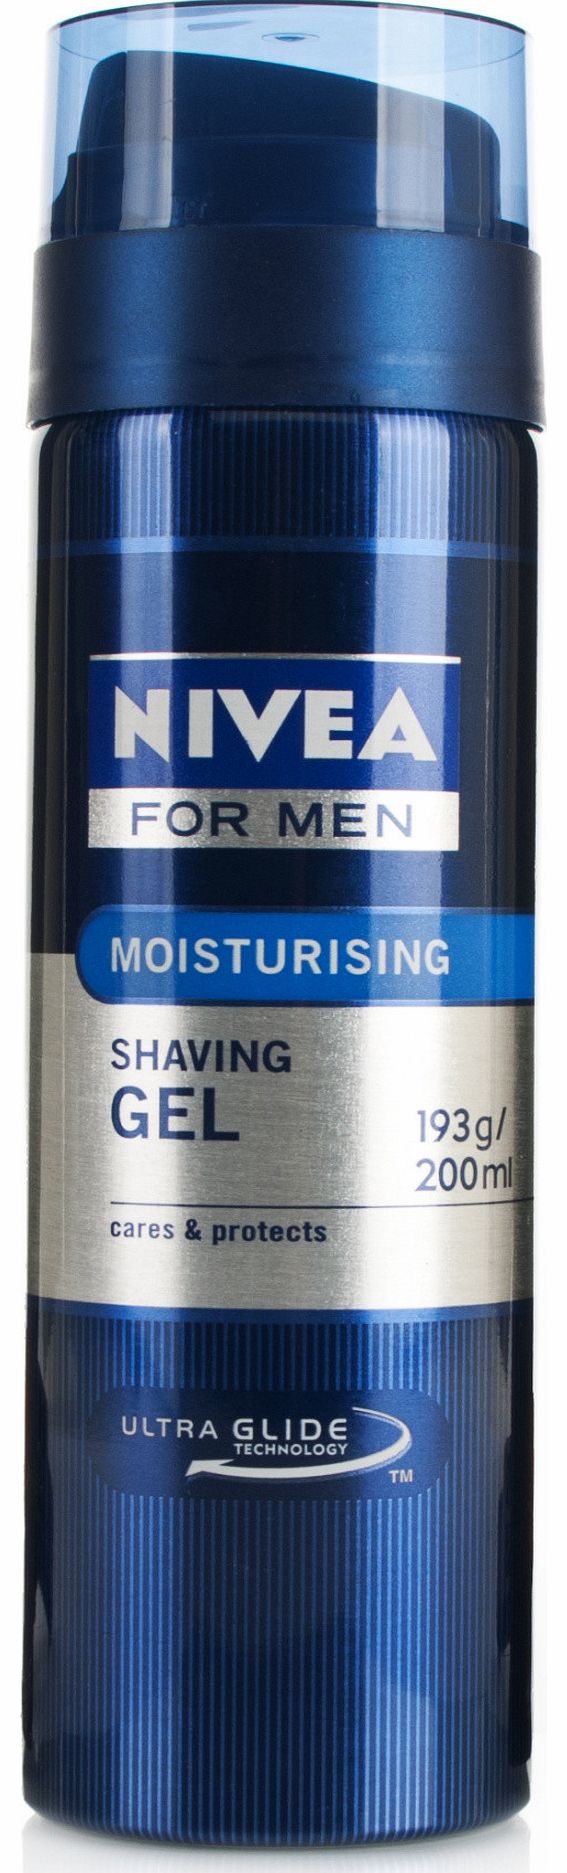 Nivea For Men Moisturising Shaving Gel